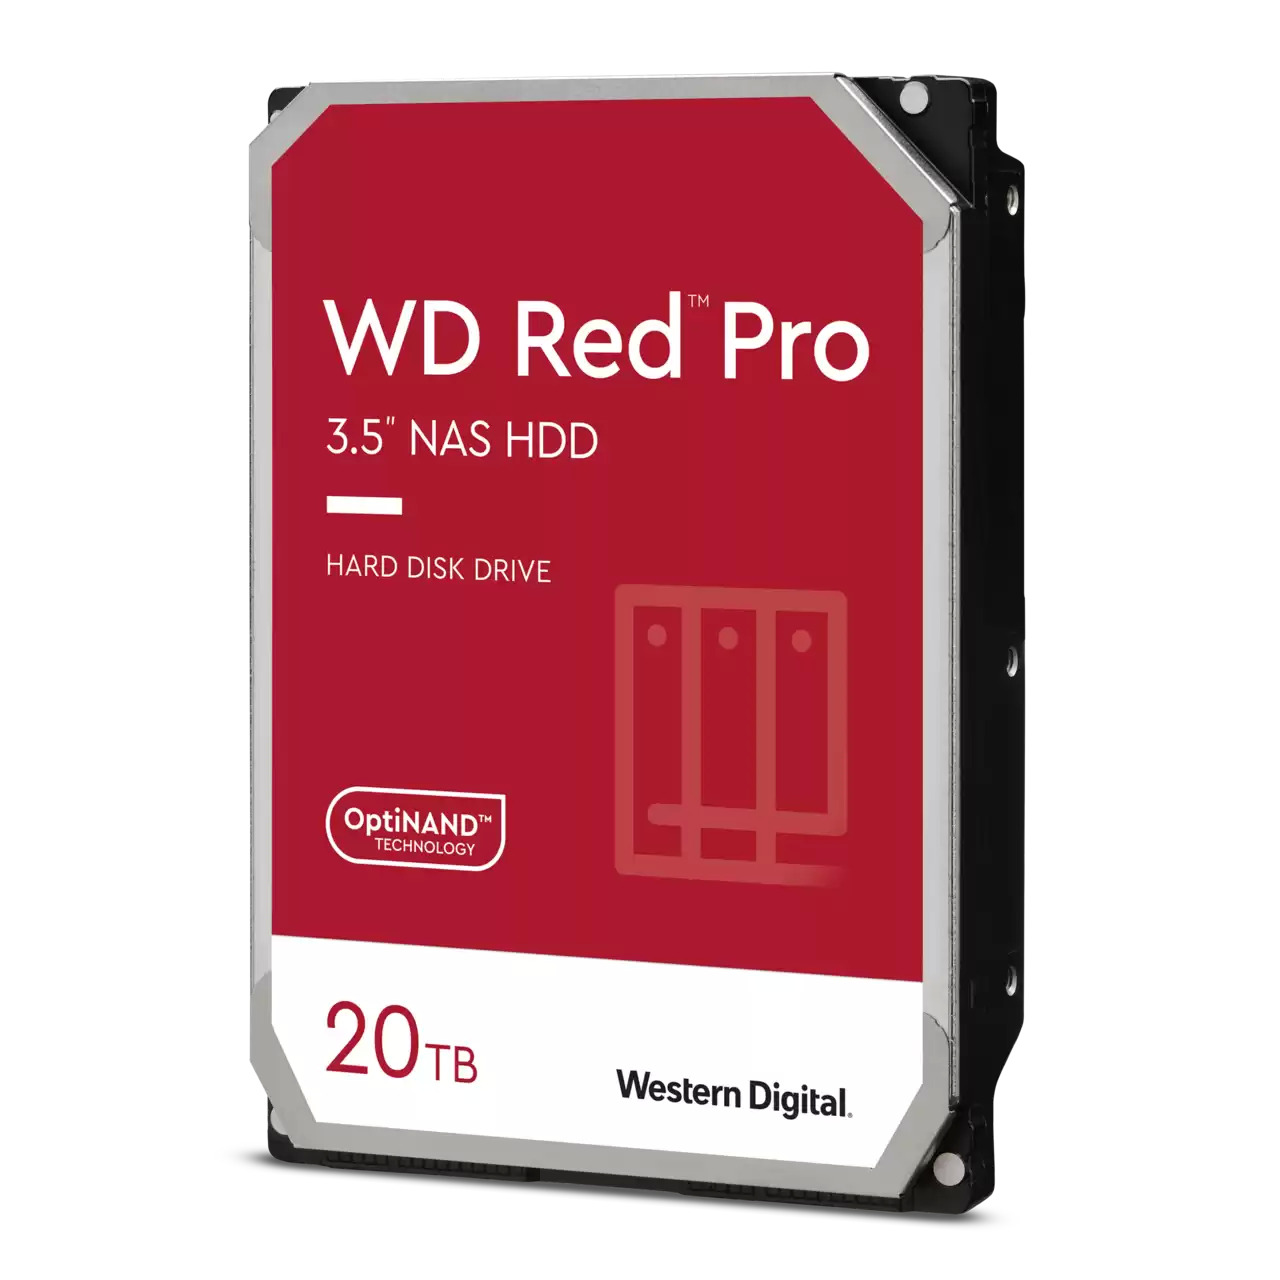 2x 20TB WD Red Pro 3.5" NAS Internal Hard Drive $624.98